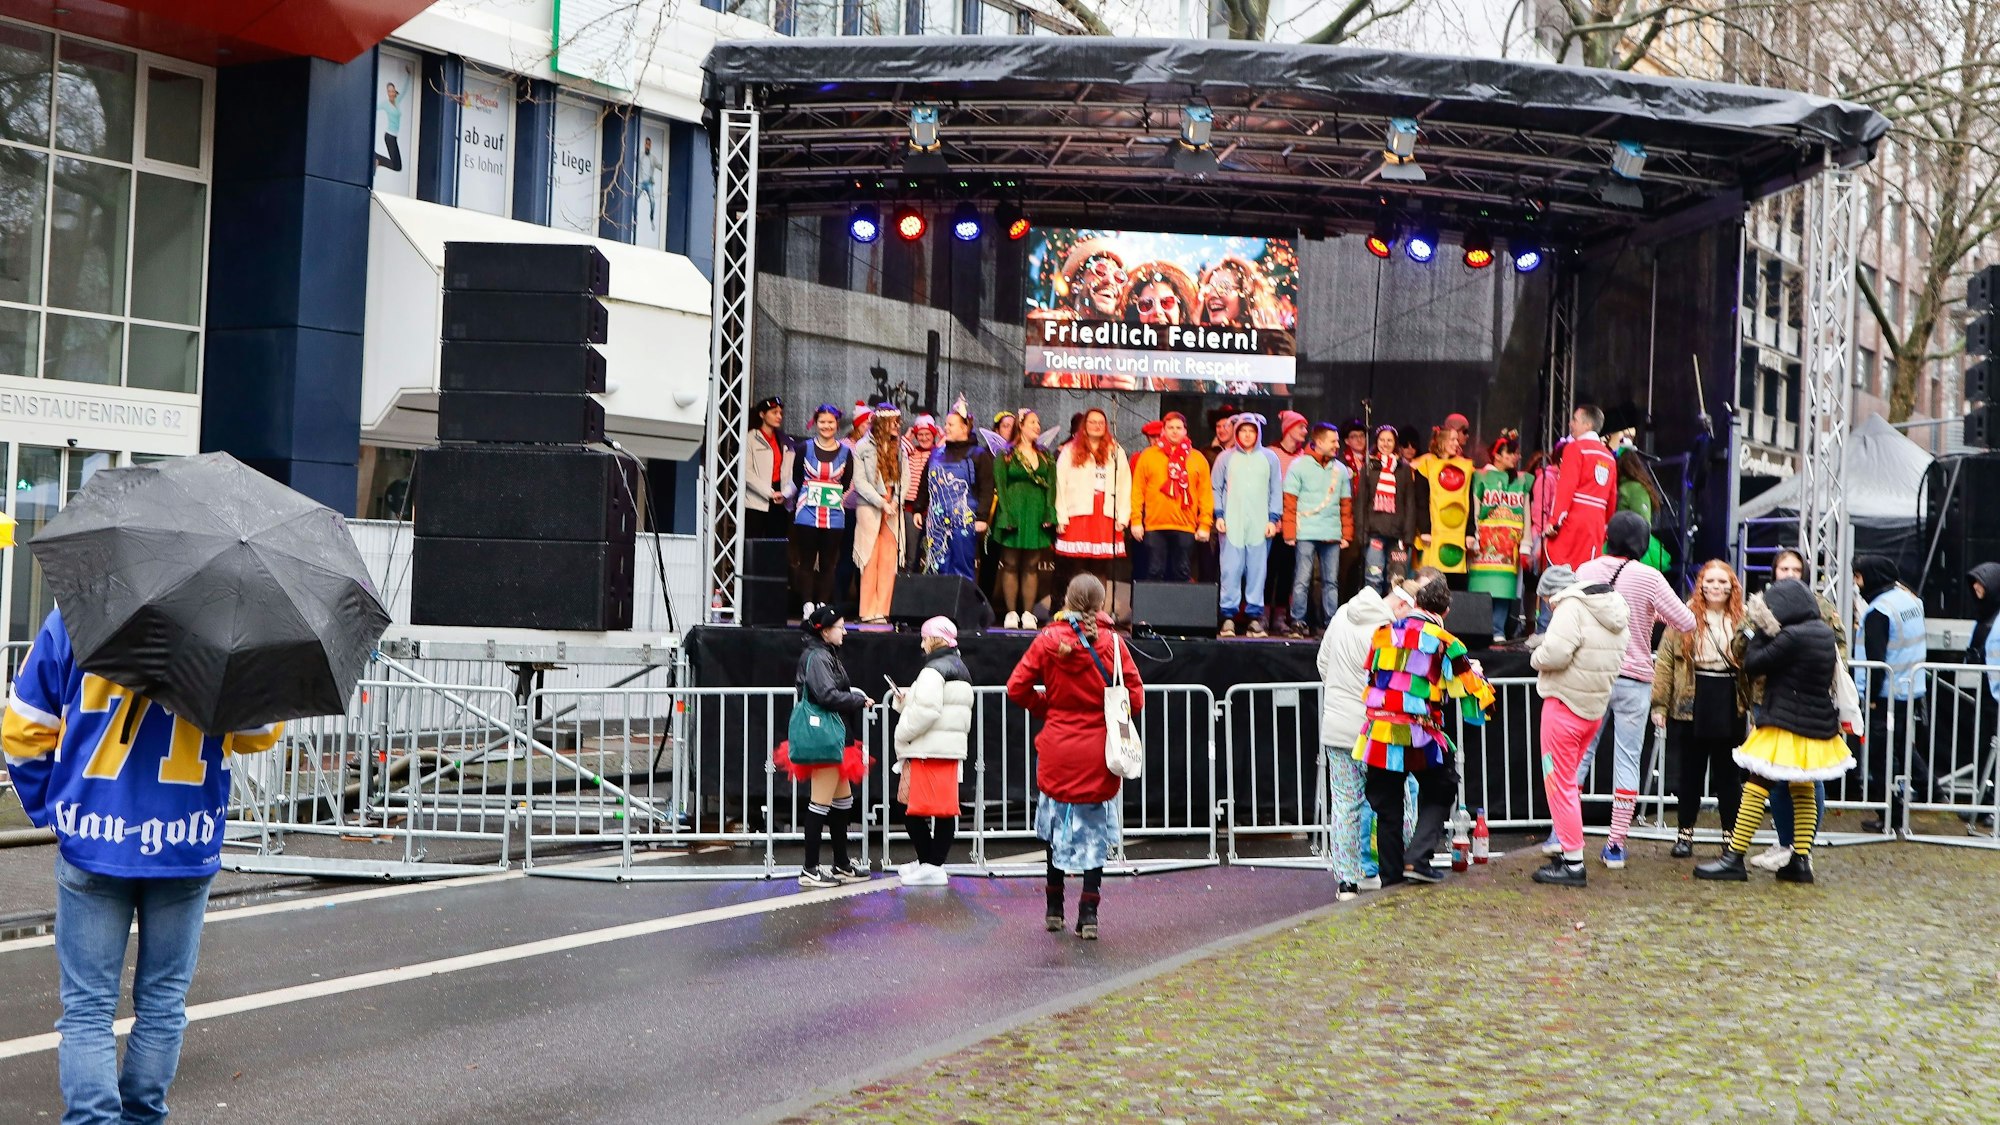 Die Bühne des Straßenfest „Open Ring“ auf dem Hohenstaufenring. Sie soll das Zülpicher Viertel entlasten. Hier ist am Vormittag aber kaum was los.